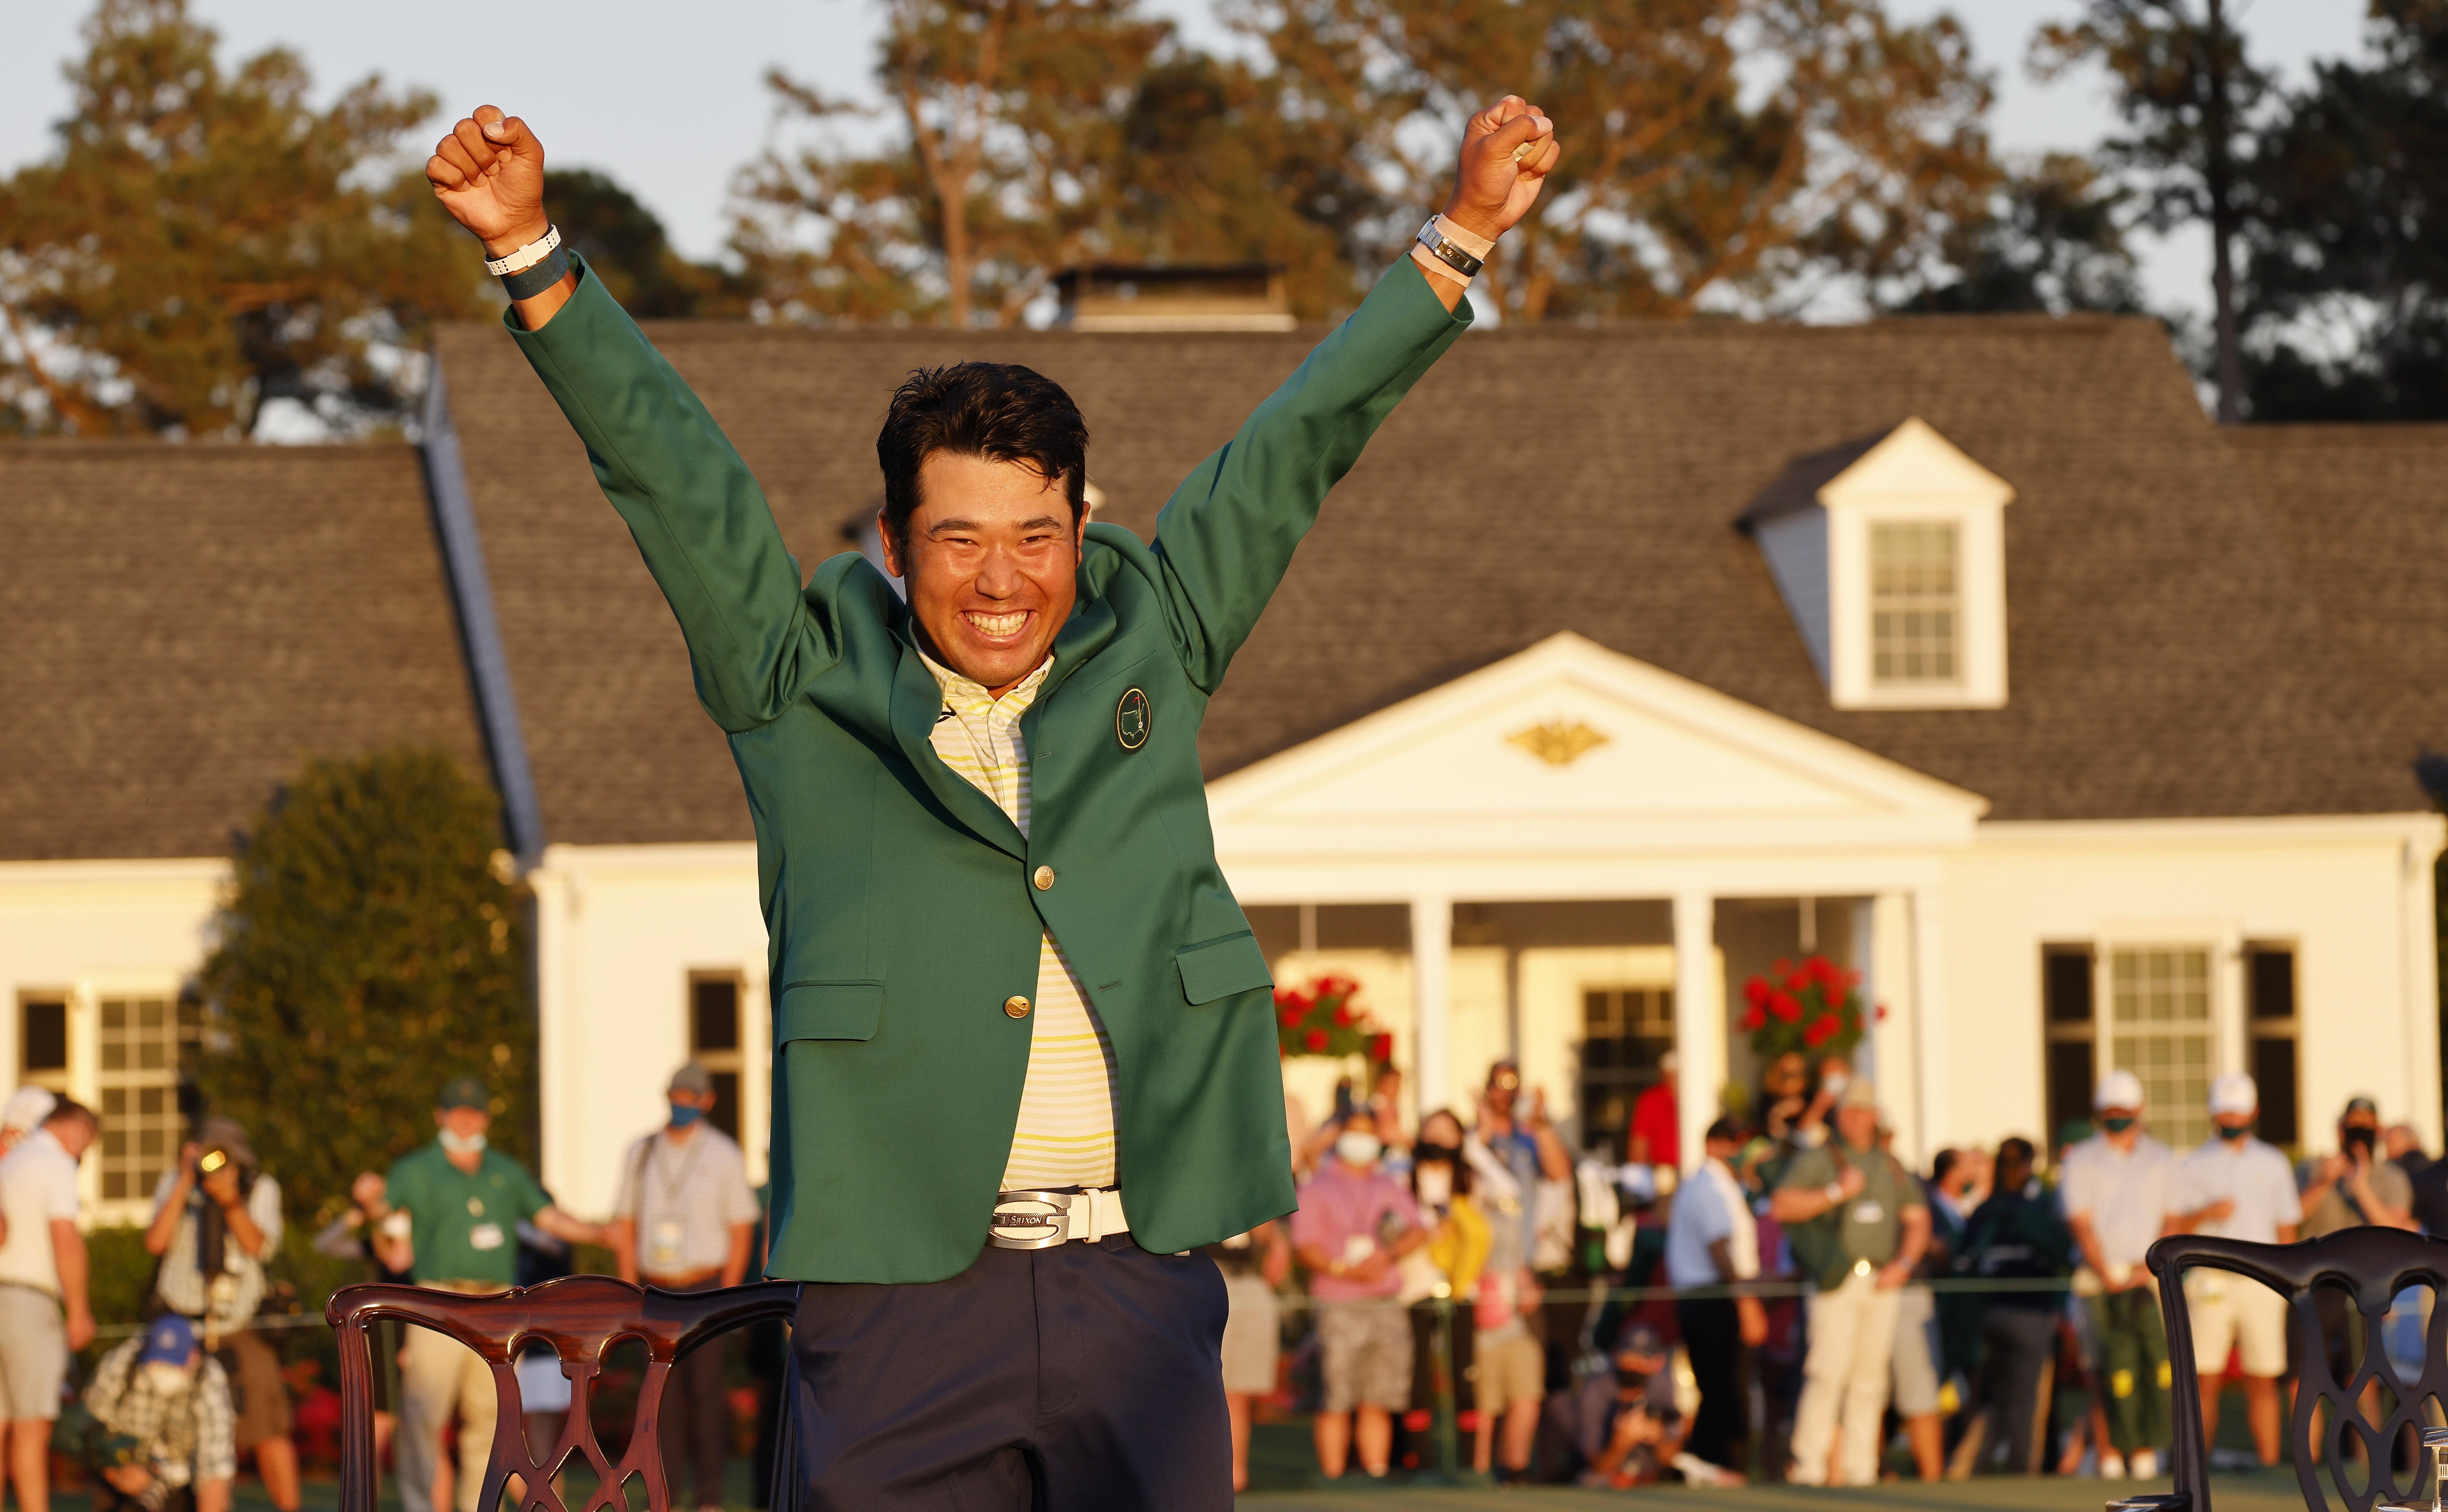 El golfista japonés Hideki Matsuyama celebra su victoria en el Masters de Augusta en Georgia, Estados Unidos. Hideki Matsuyama, número 25 del mundo, vio cumplido el 11 de abril el gran sueño de su vida al convertirse en el primer japonés que conquista el Masters de Augusta, su primer título mayor como profesional. Foto Prensa Libre: EFE.